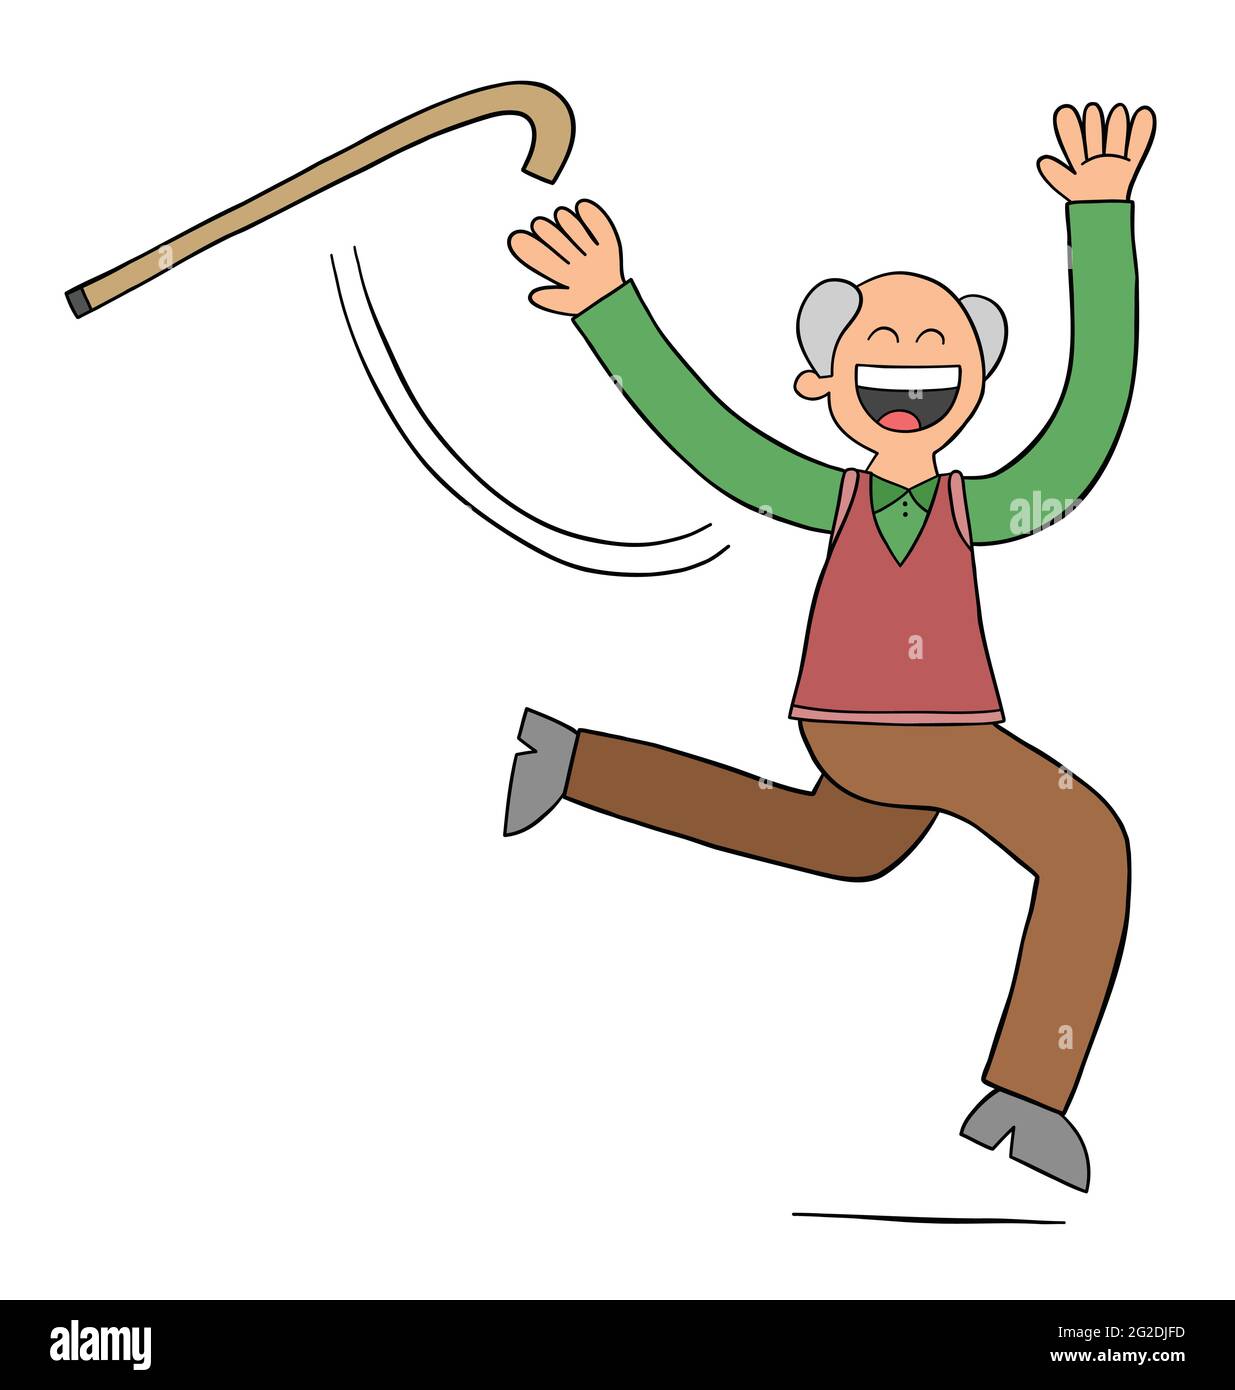 Cartoon alter Mann wirft den Stock und beginnt zu laufen, Vektor-Illustration. Schwarz umrandet und farbig. Stock Vektor